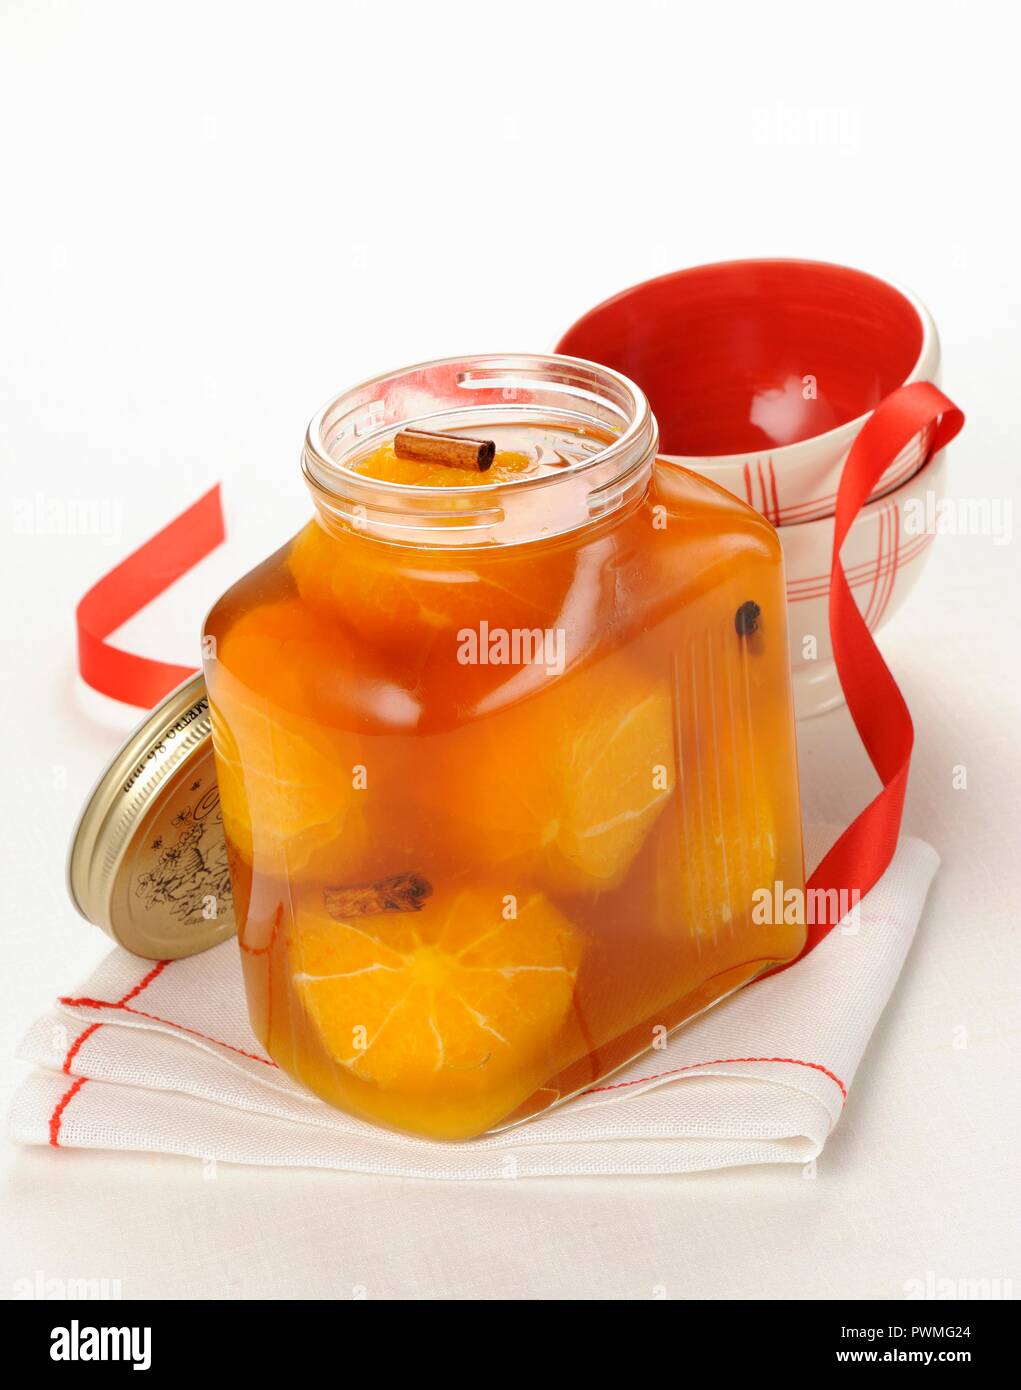 Brandy les oranges avec les épices dans un pot Banque D'Images